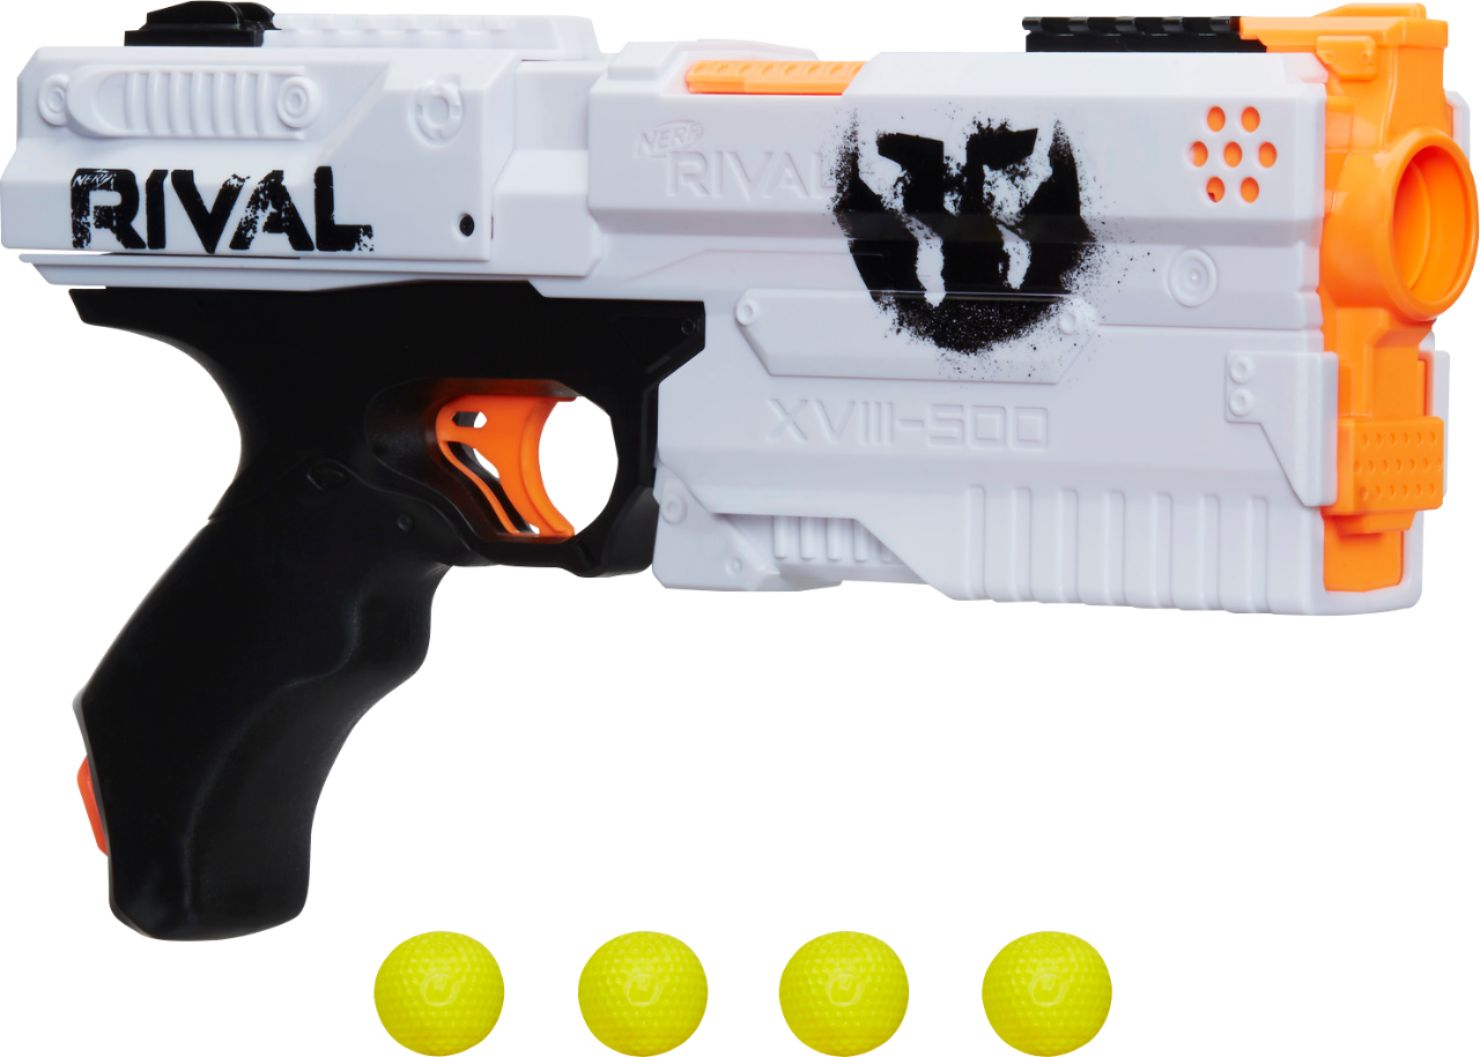 rival toy gun